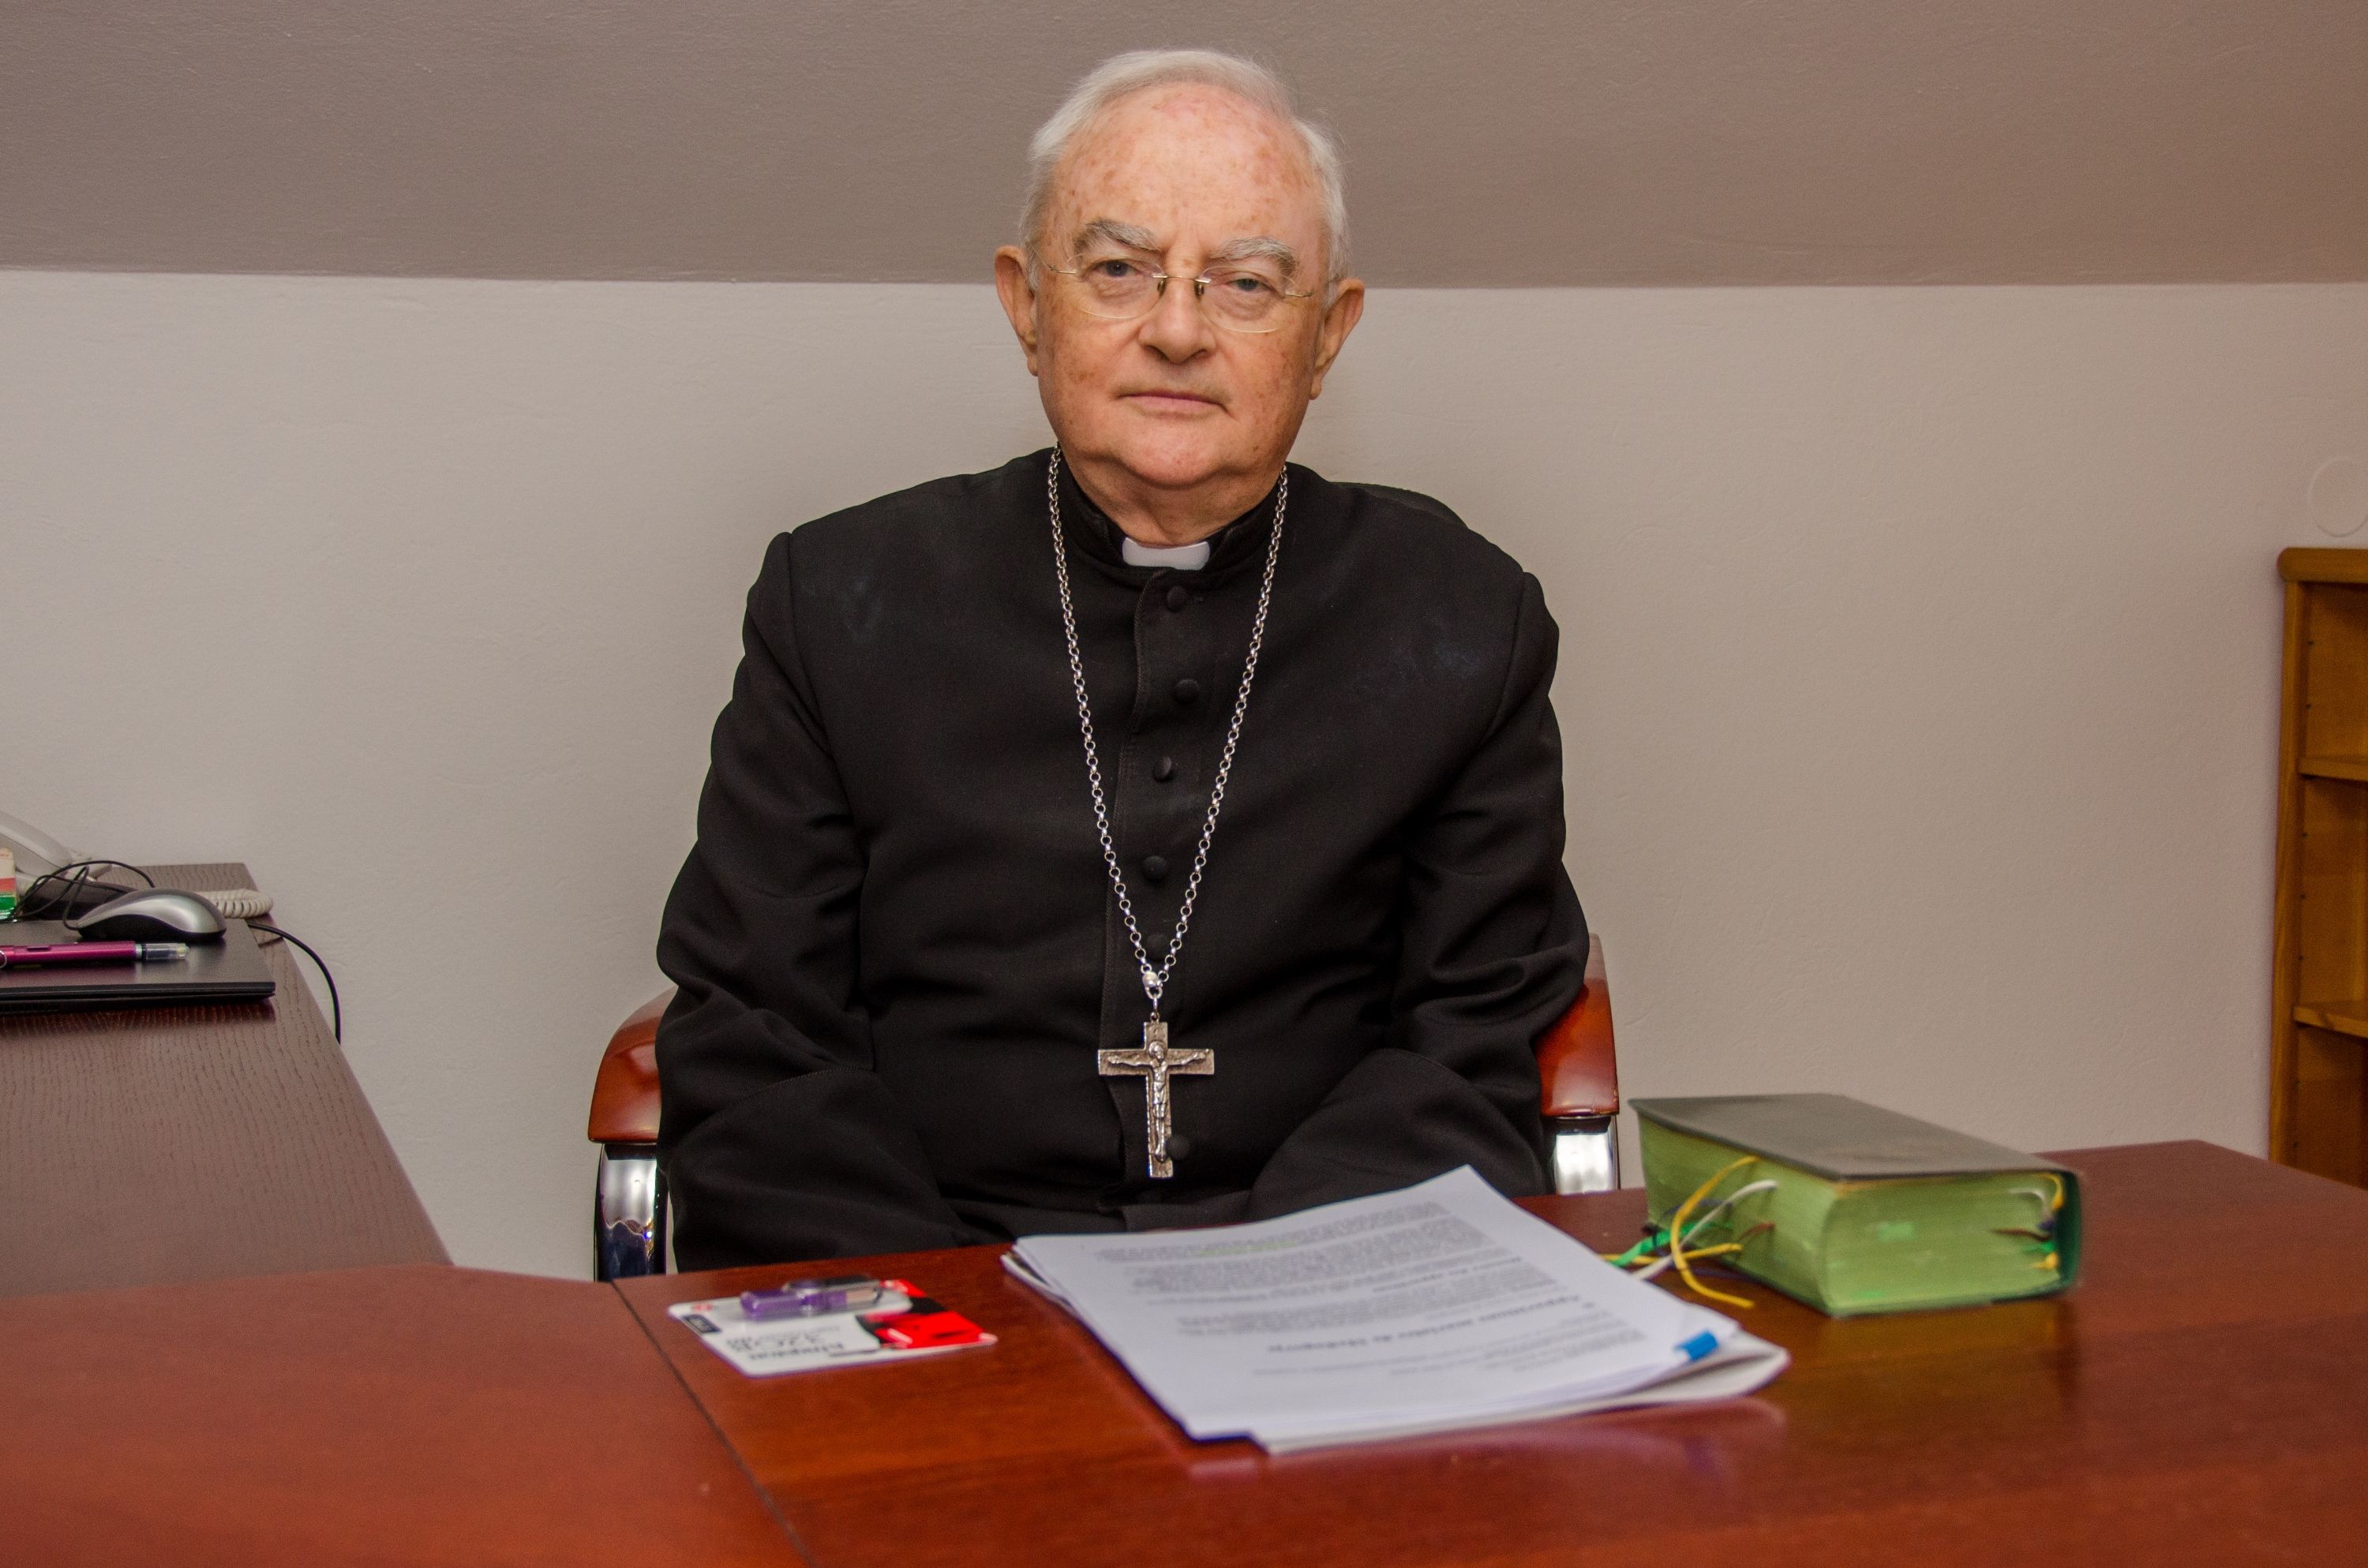 nadbiskup Henryk Hoser